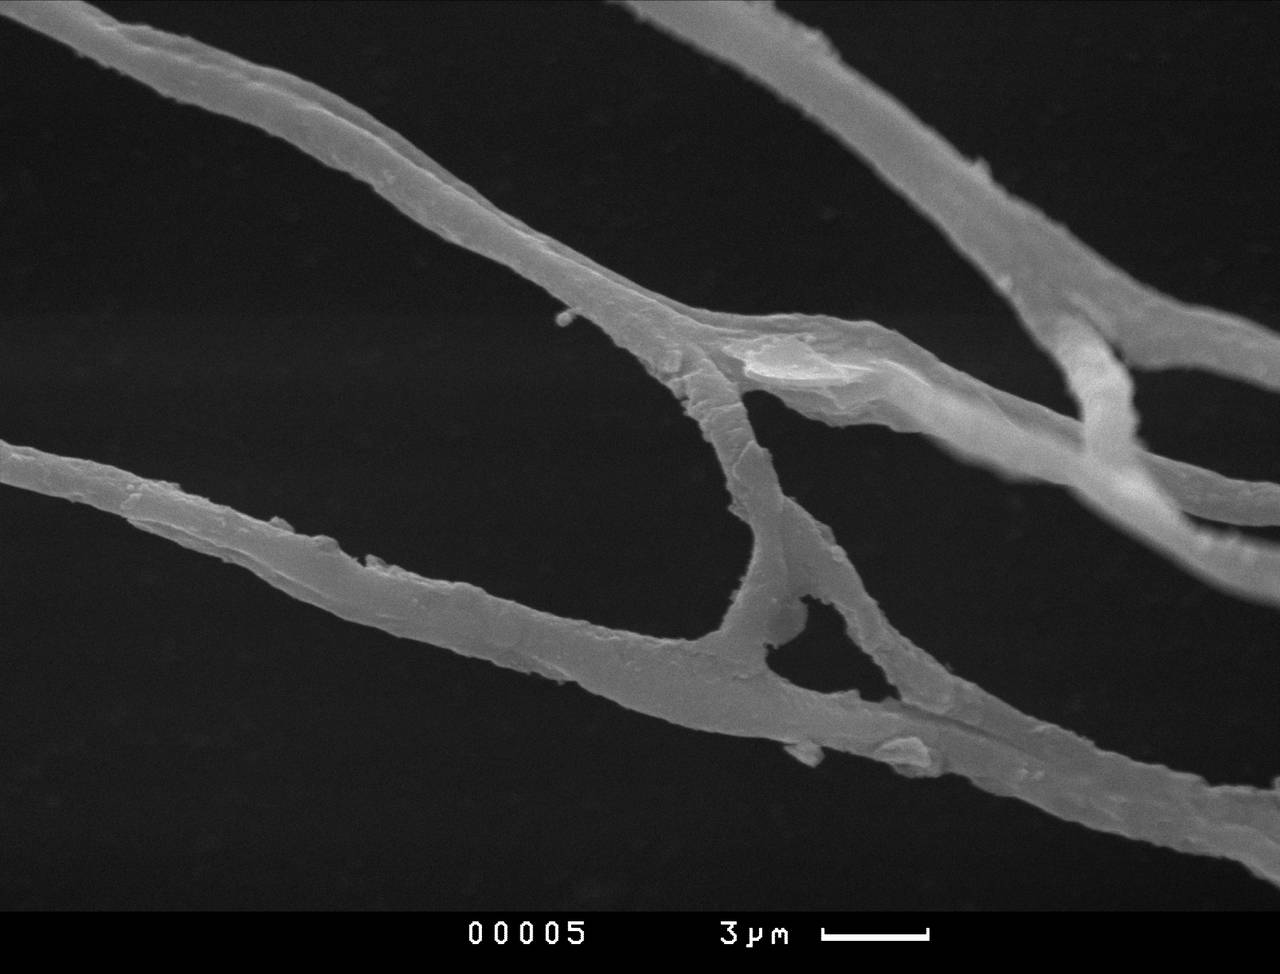 Lamprderma gulielmae внешний вид спорангия. Хорошо заметны углубления на поверхности перидия, СЭМ, Нелидовский, Тверская область (Россия)